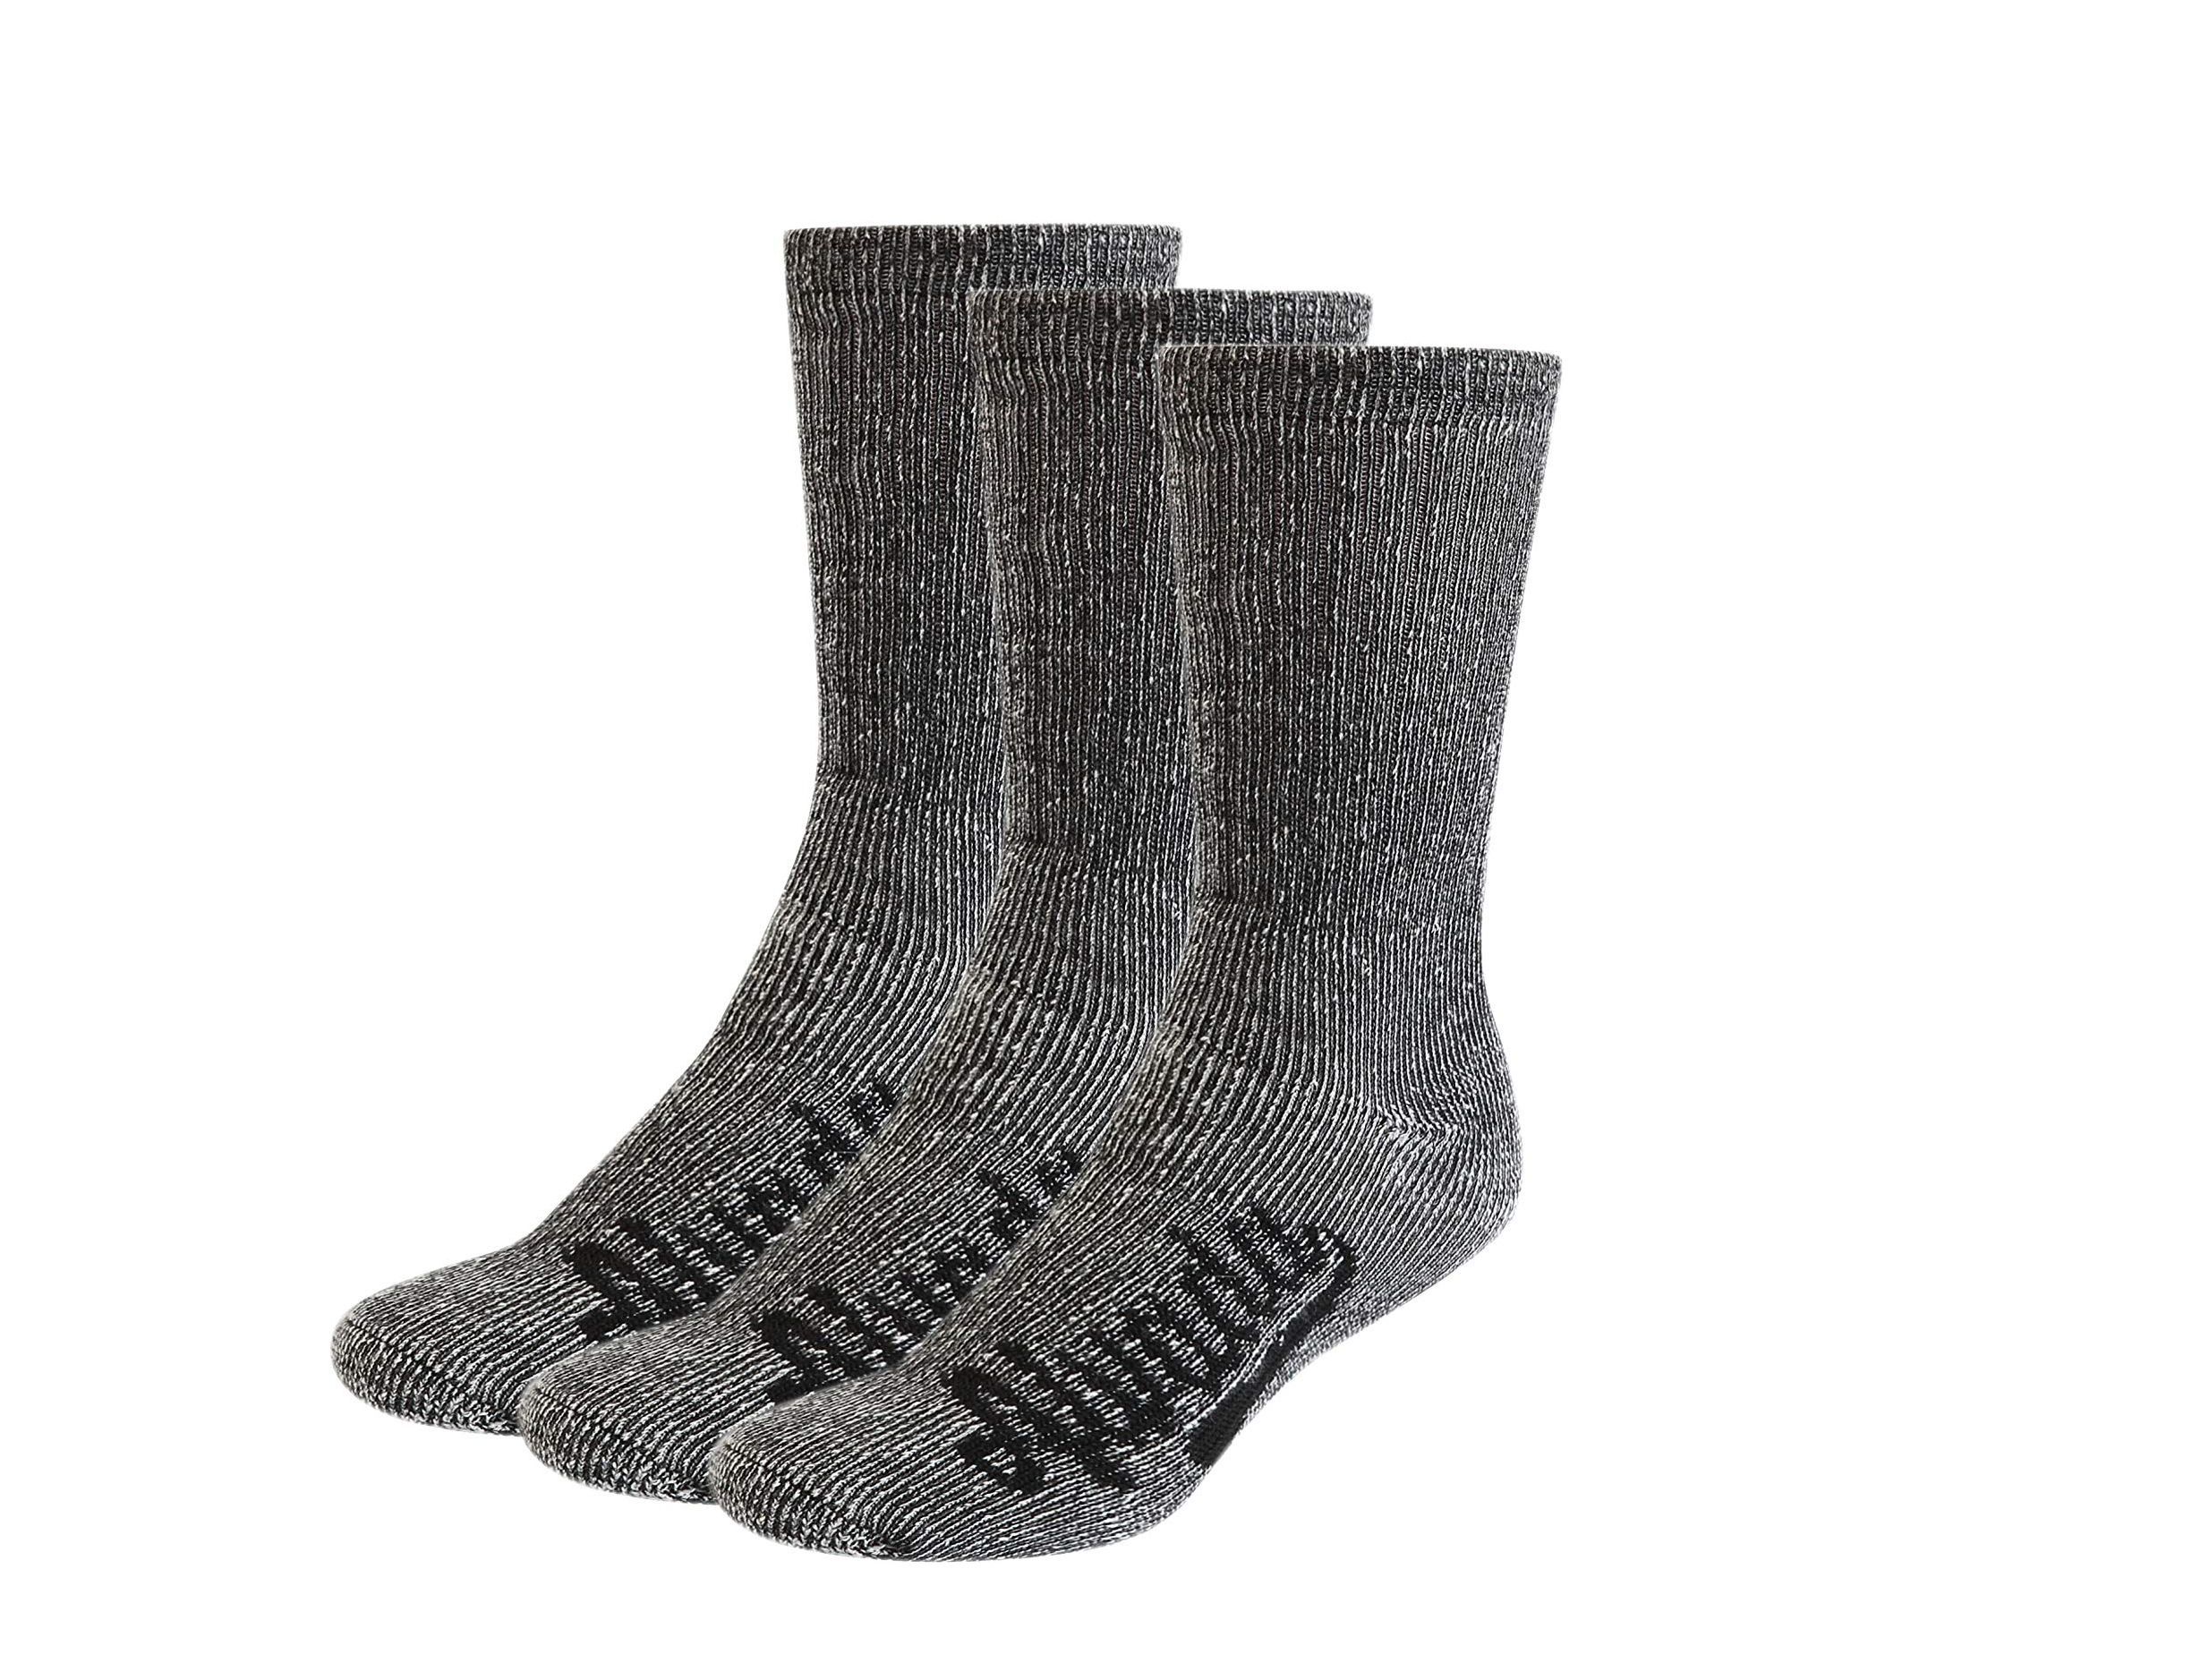 6 Pairs Of Ladies Chunky Wool Socks,Heavy Duty Work Boot Socks, 